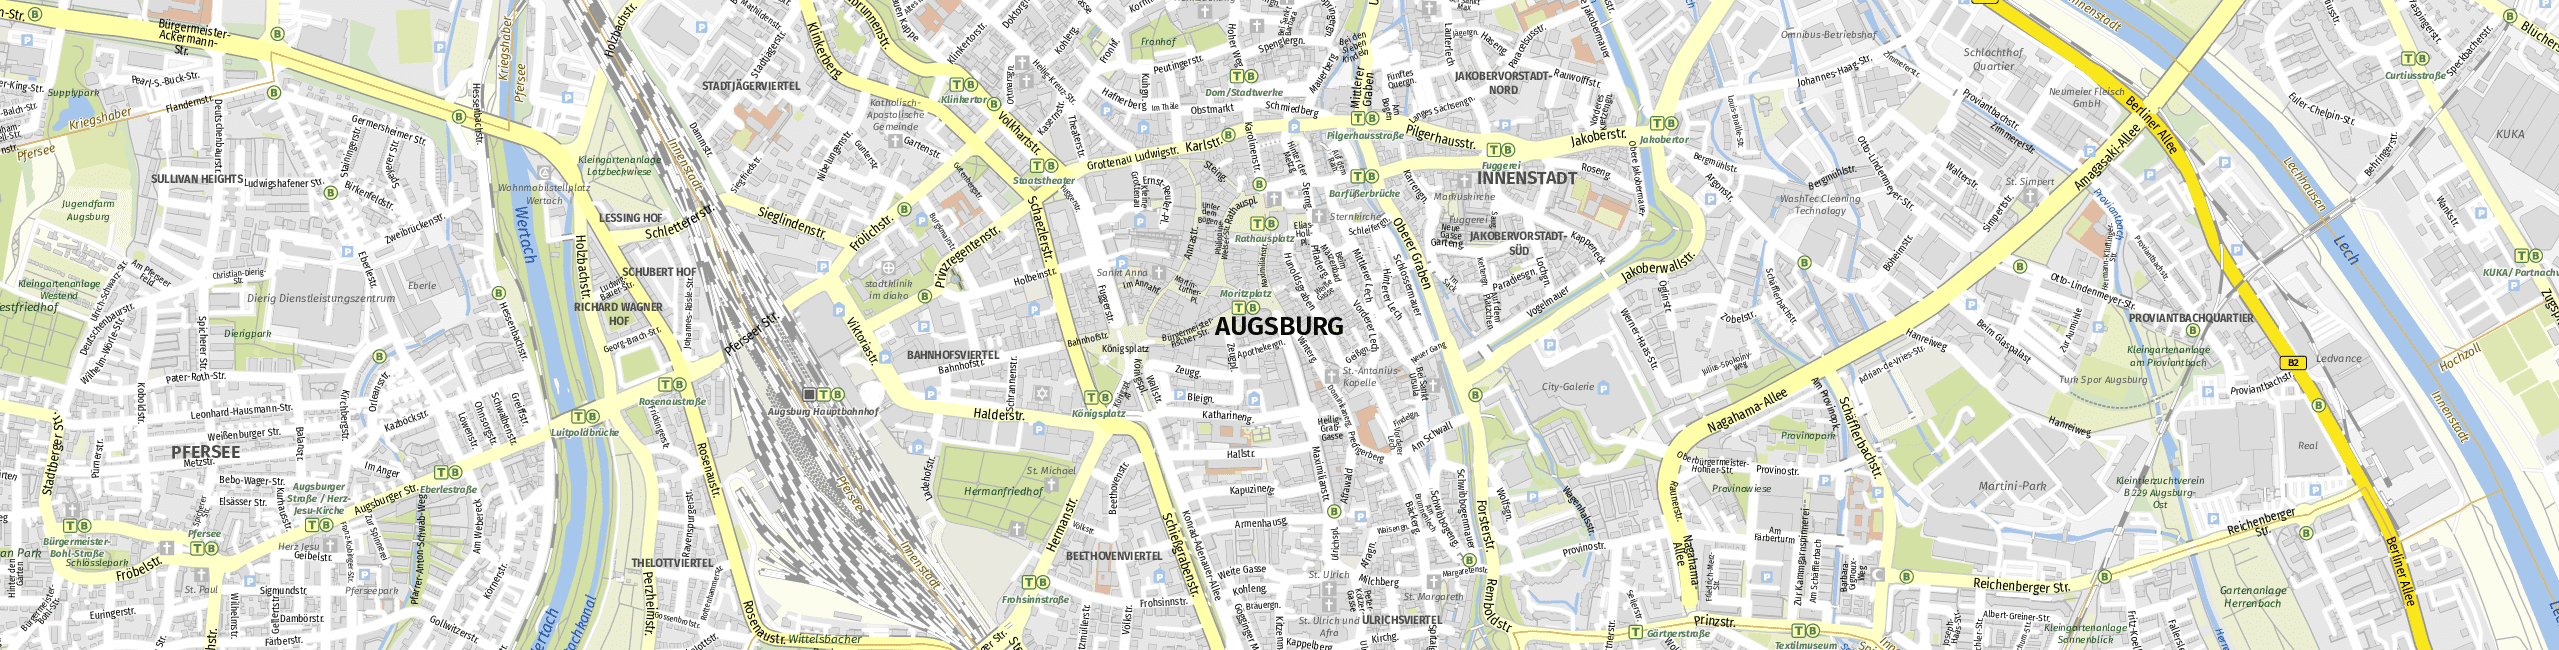 Stadtplan Augsburg zum Downloaden.